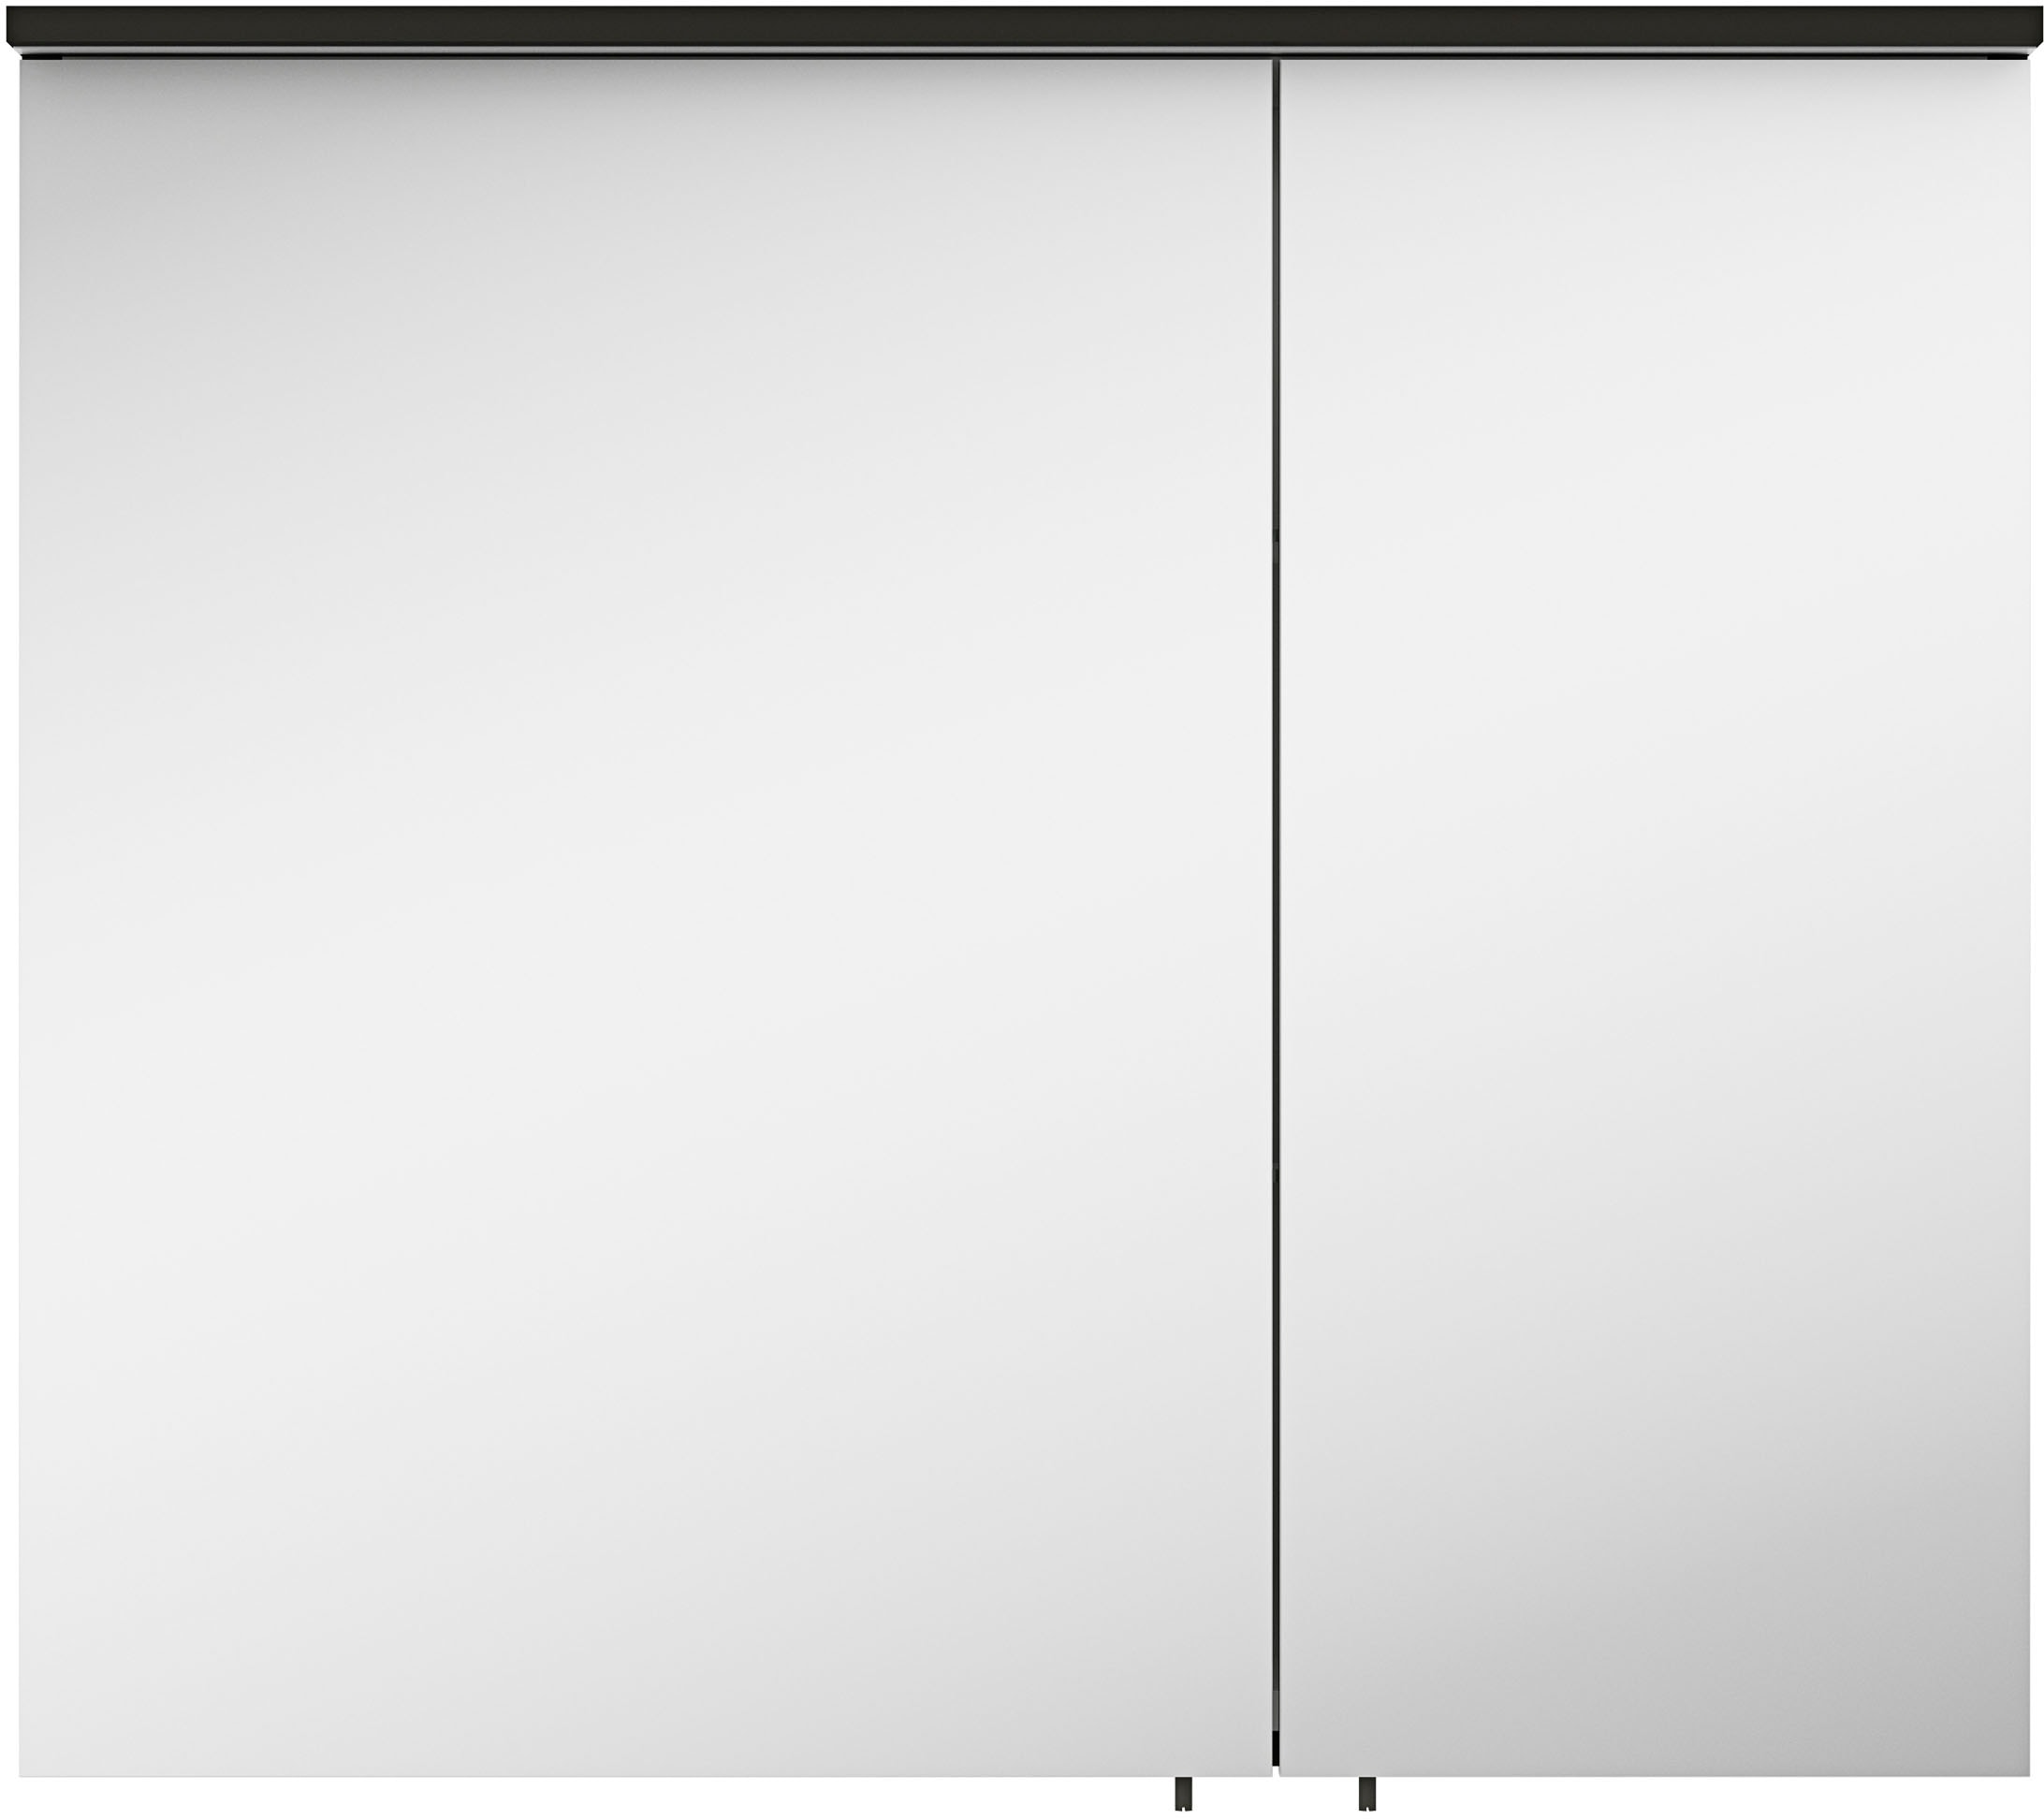 MARLIN Spiegelschrank "3510clarus", 80 cm breit, Soft-Close-Funktion, inkl. Beleuchtung, vormontiert